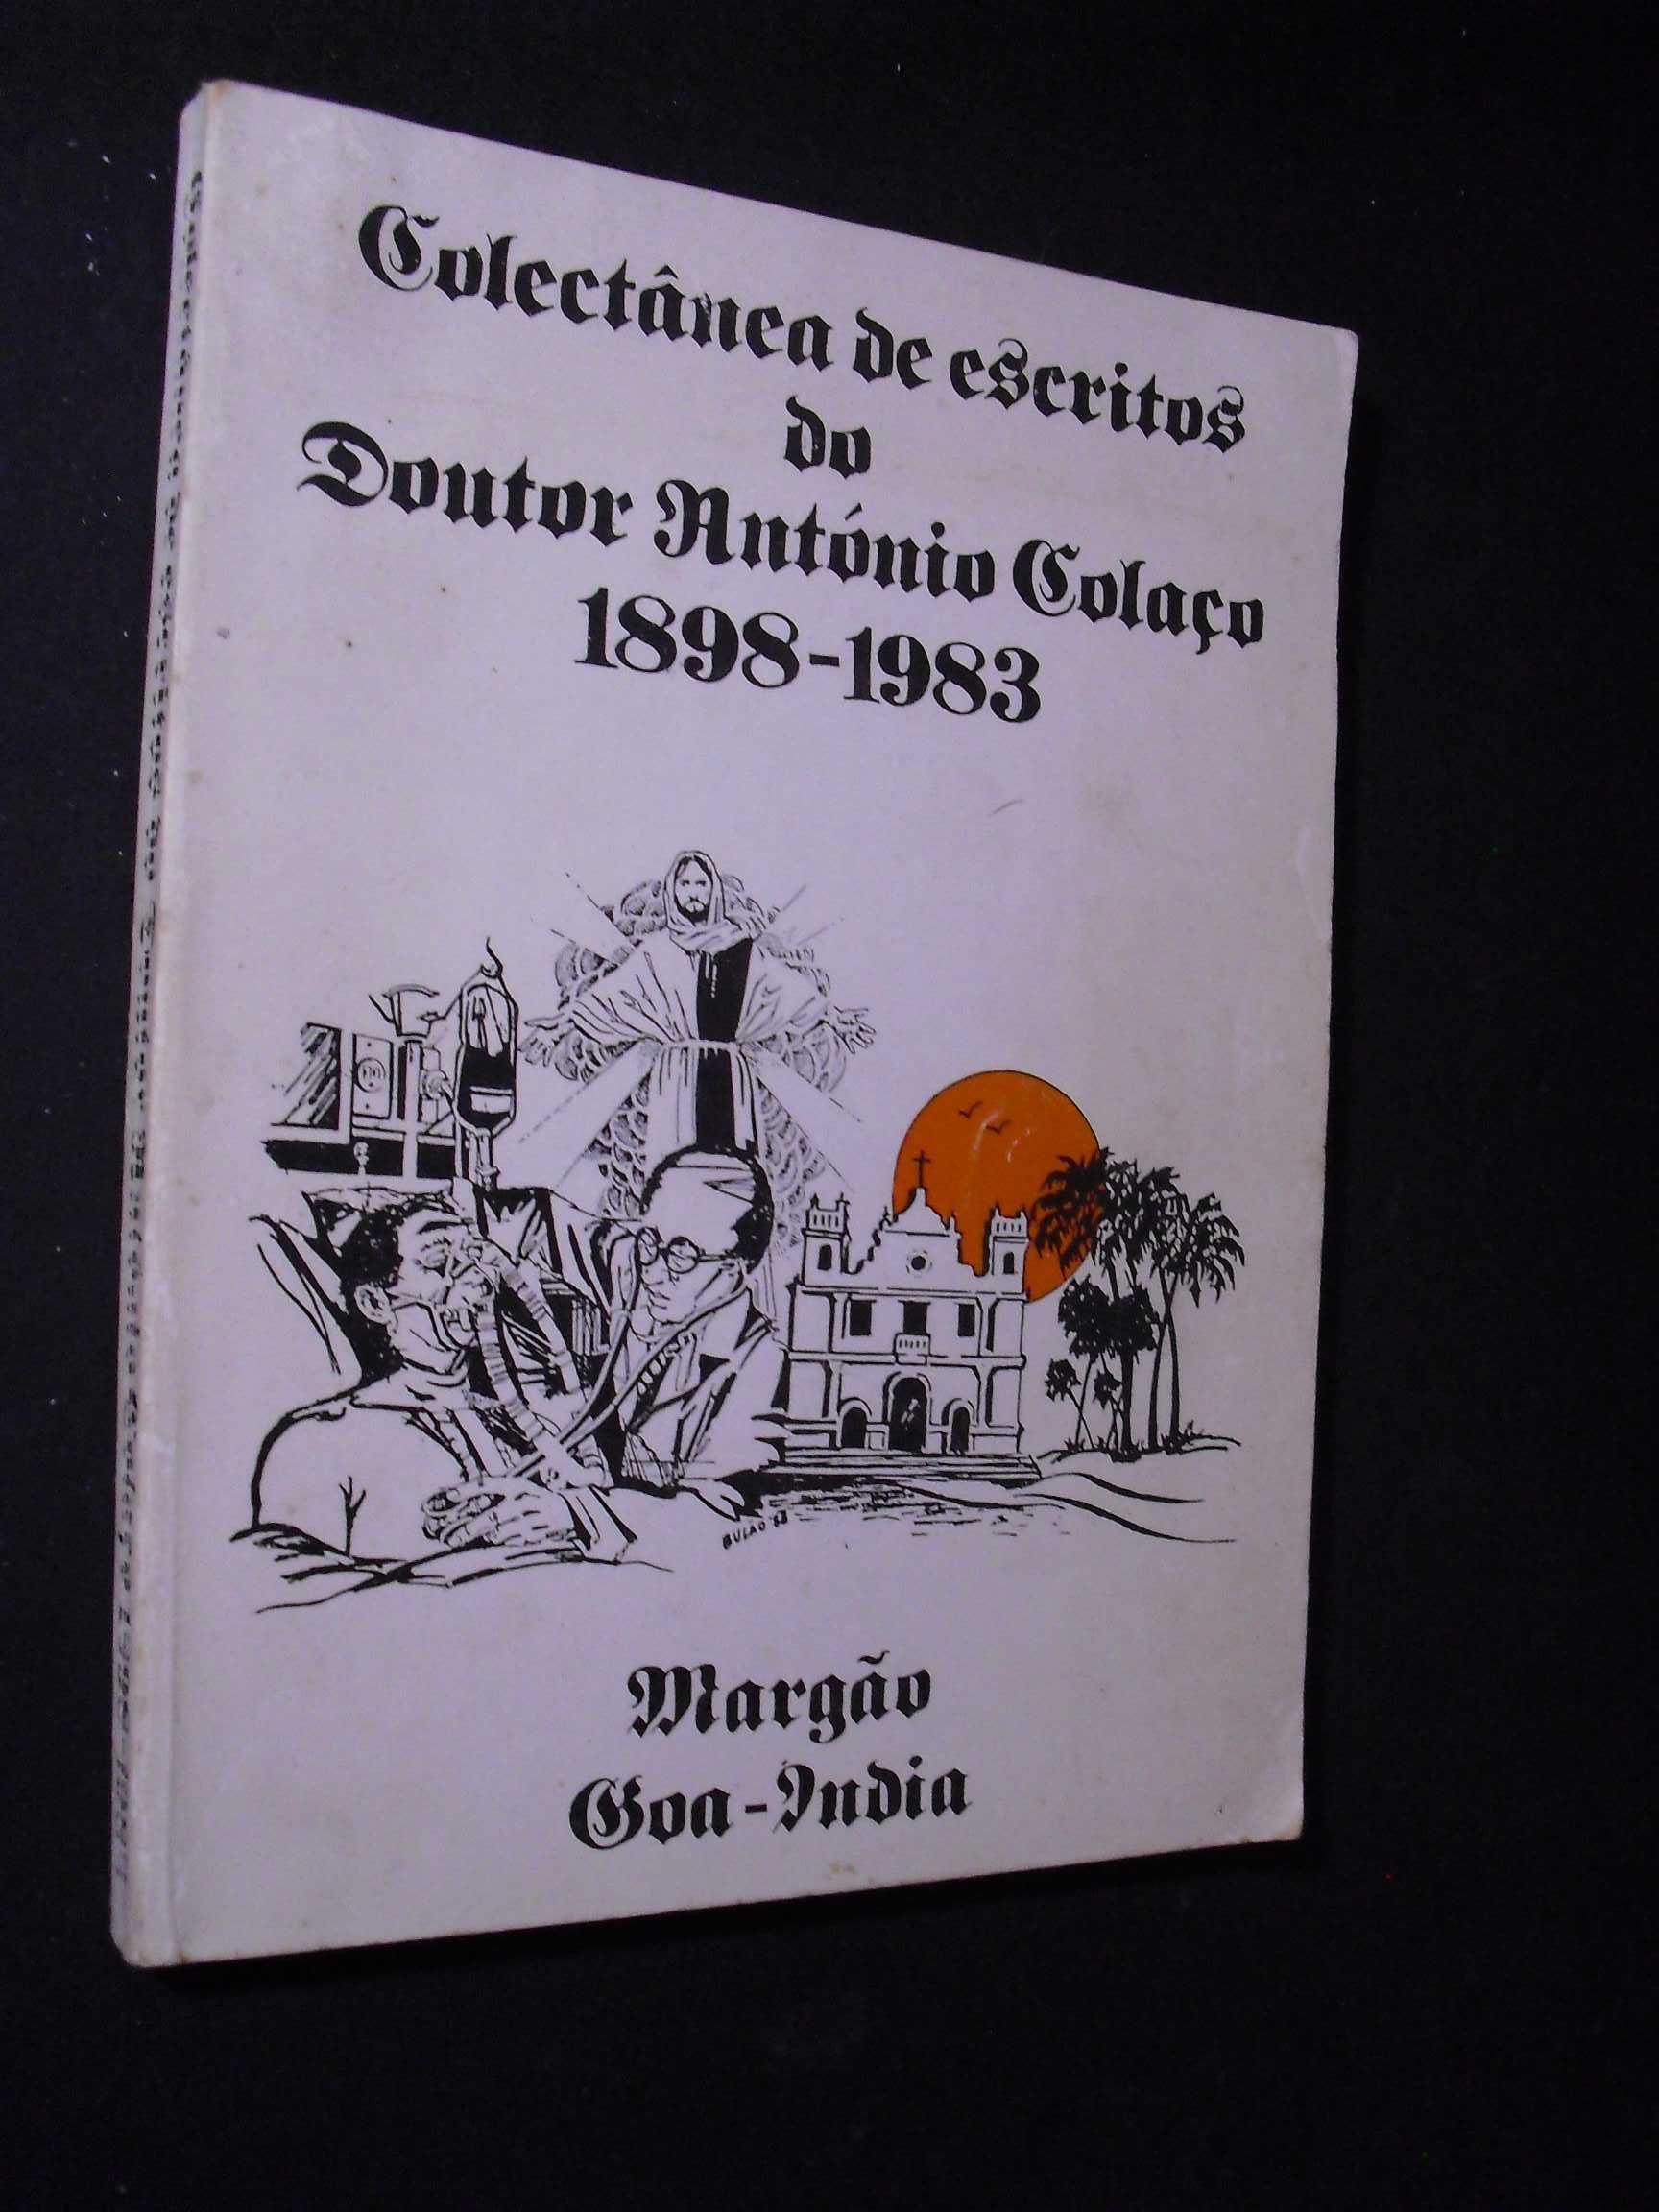 GOA-ÍNDIA-ANTÓNIO COLAÇO-COLECTÃNEA DE ESCRITOS